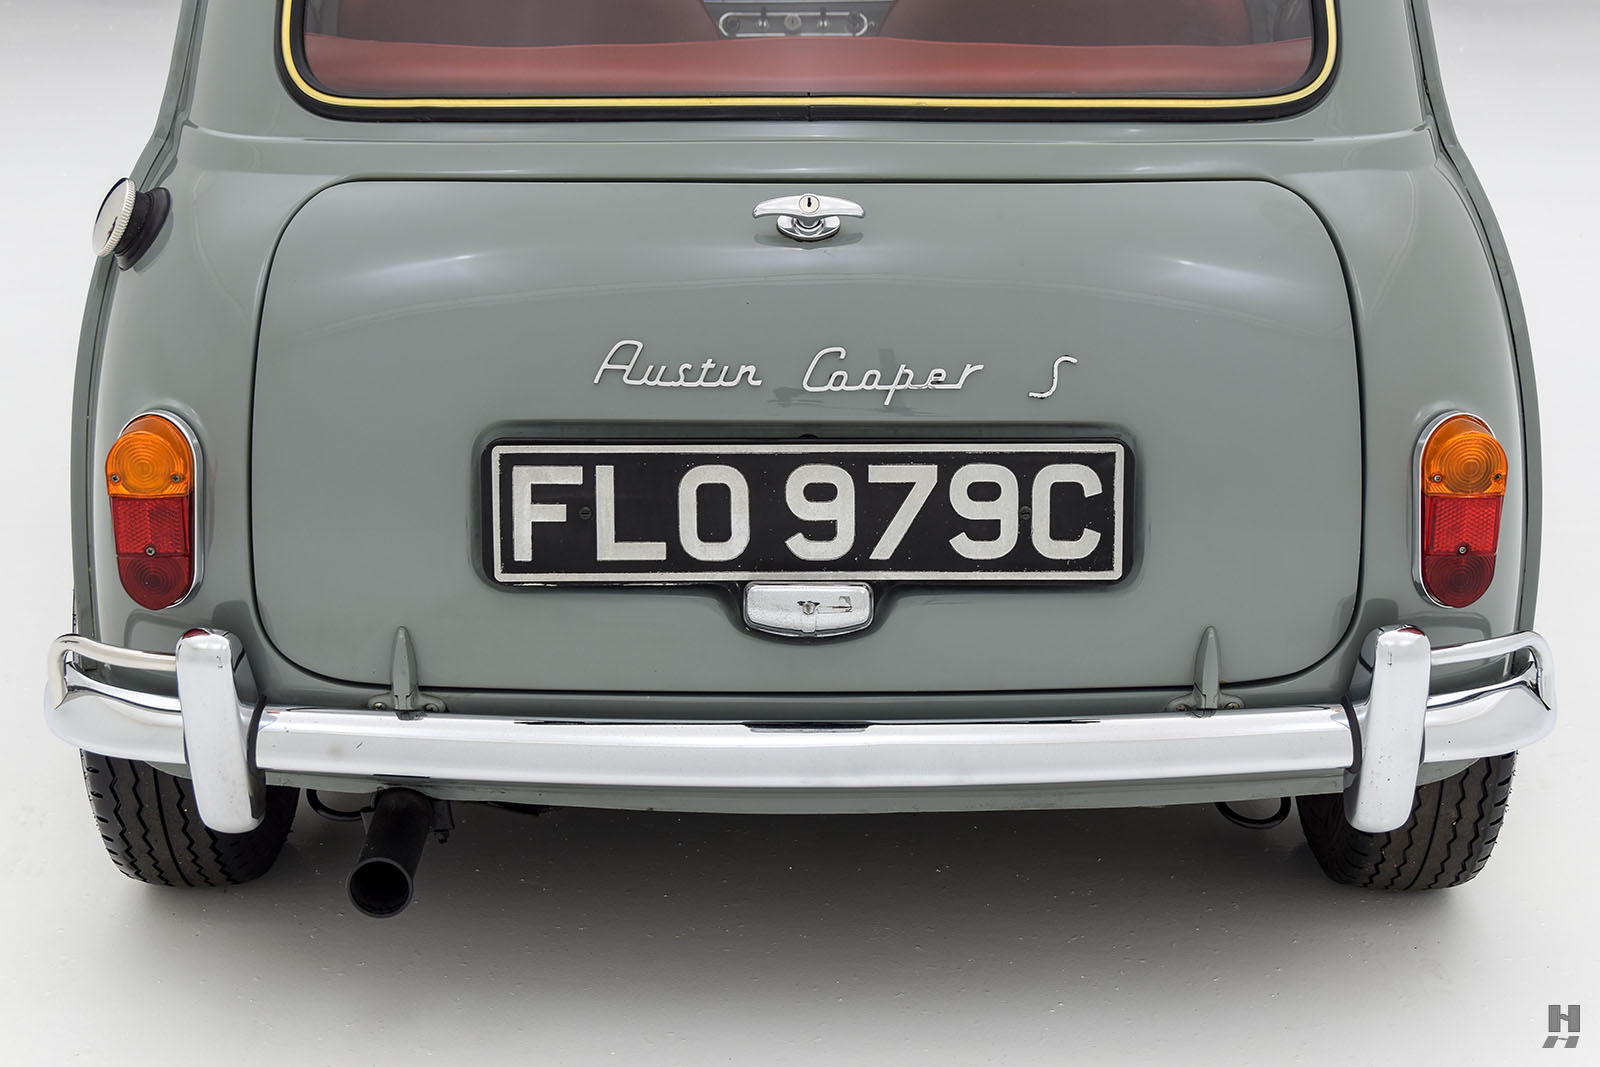 1967 austin mini cooper 1275s